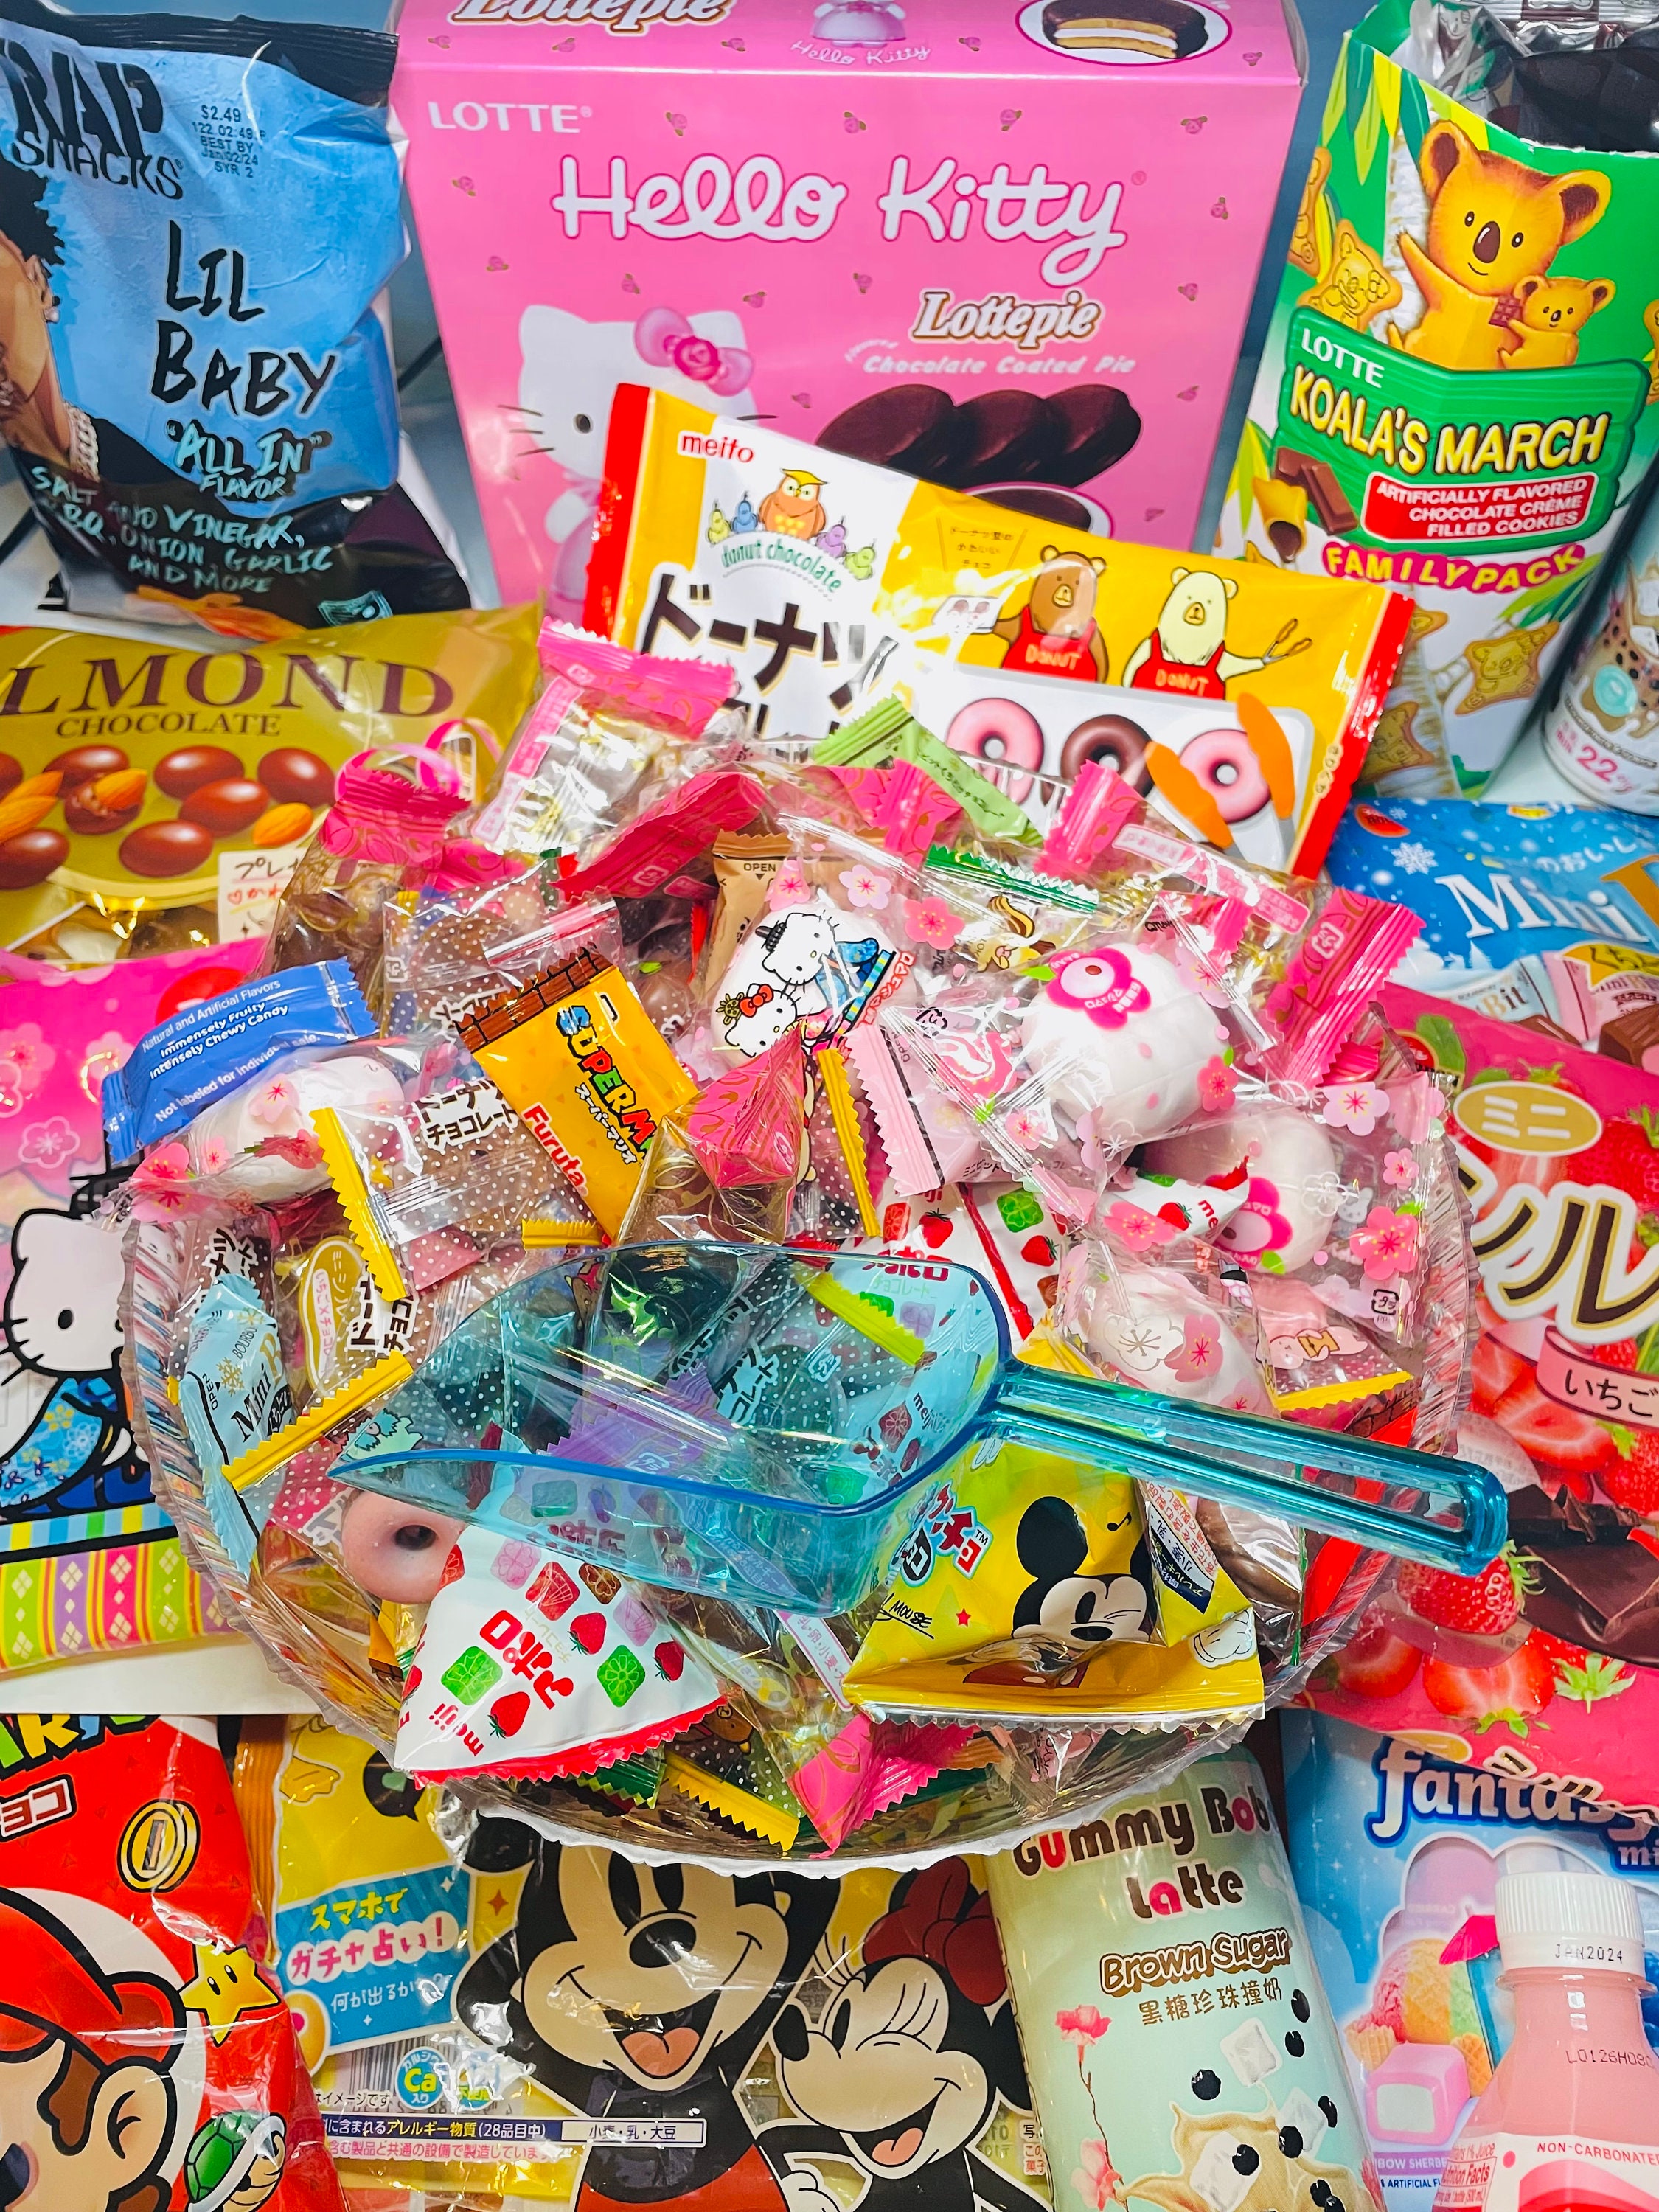 Party BOX Boîte de collation de fête populaire japonaise populaire